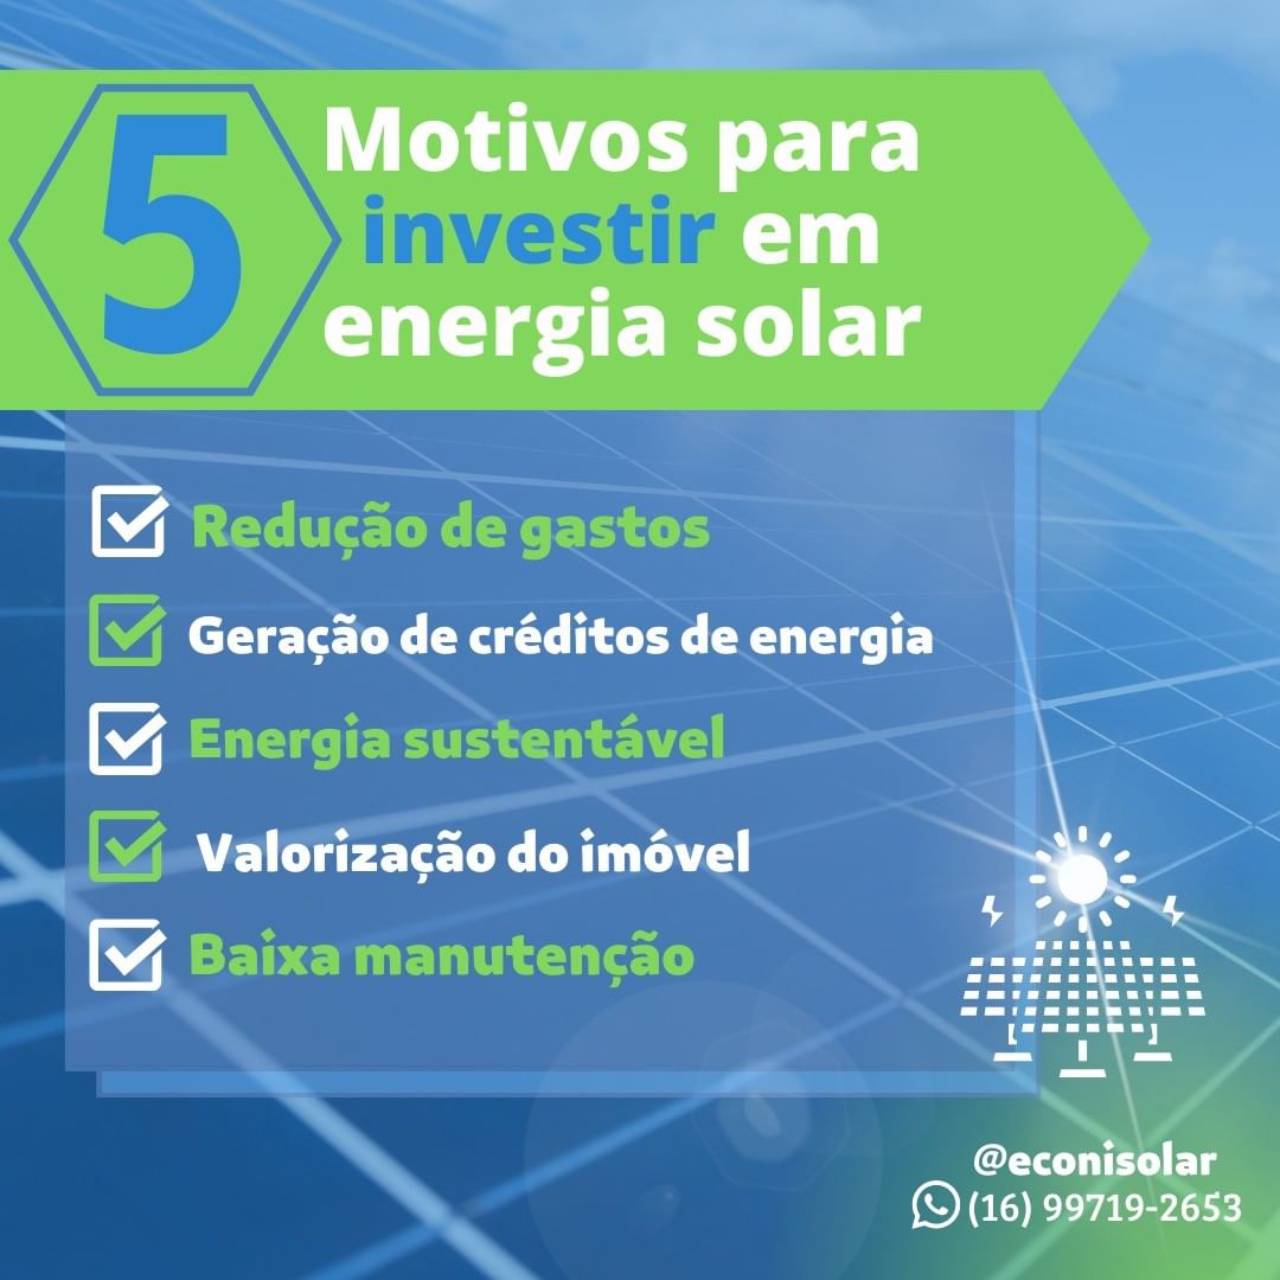 ENERGY BRASIL SOLAR Unidade São Carlos/SP